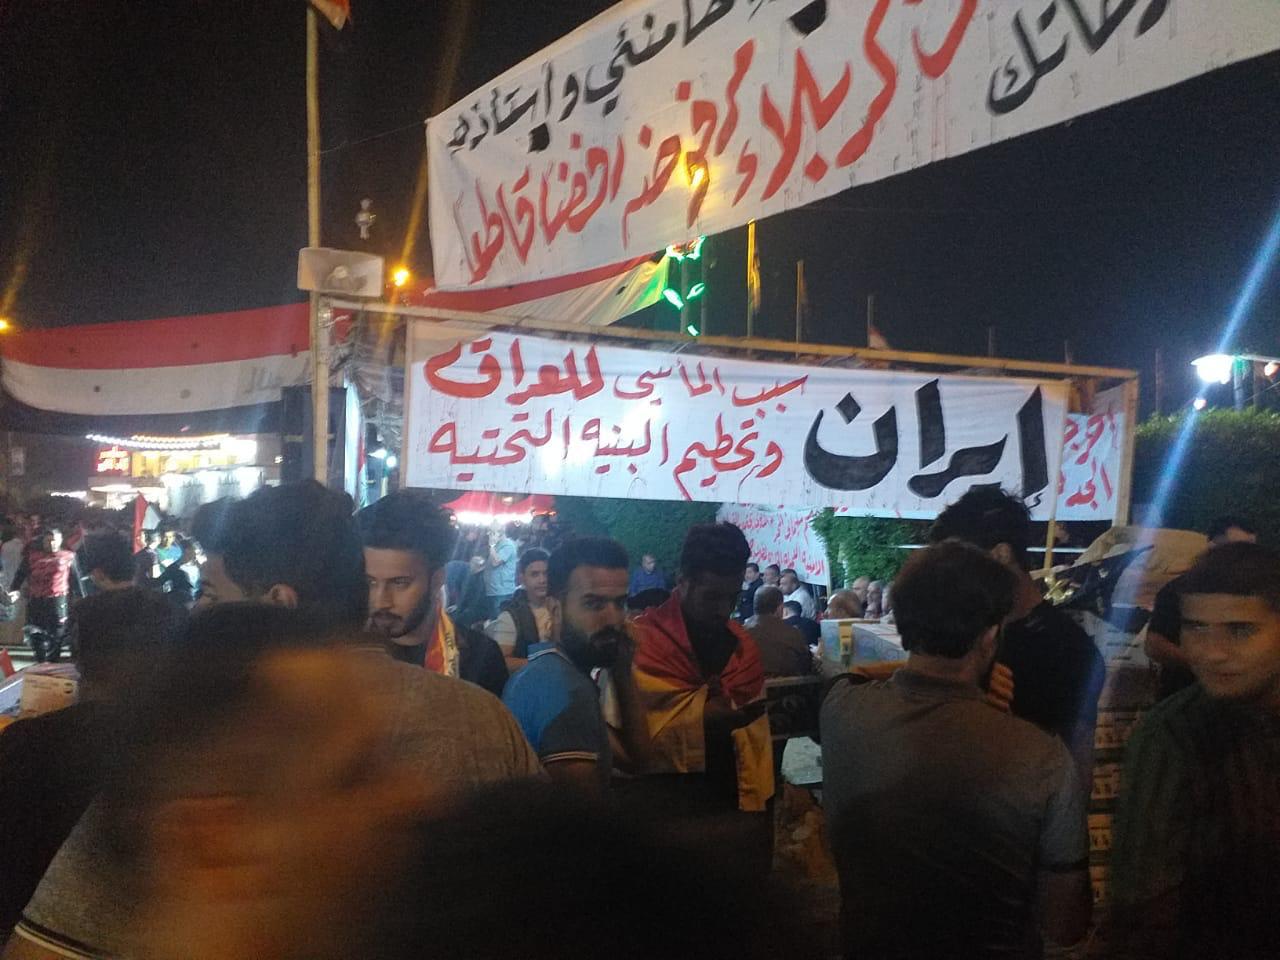 رفض غير مسبوق لإيران وسط بغداد والمحتجون ينتقلون للإضراب